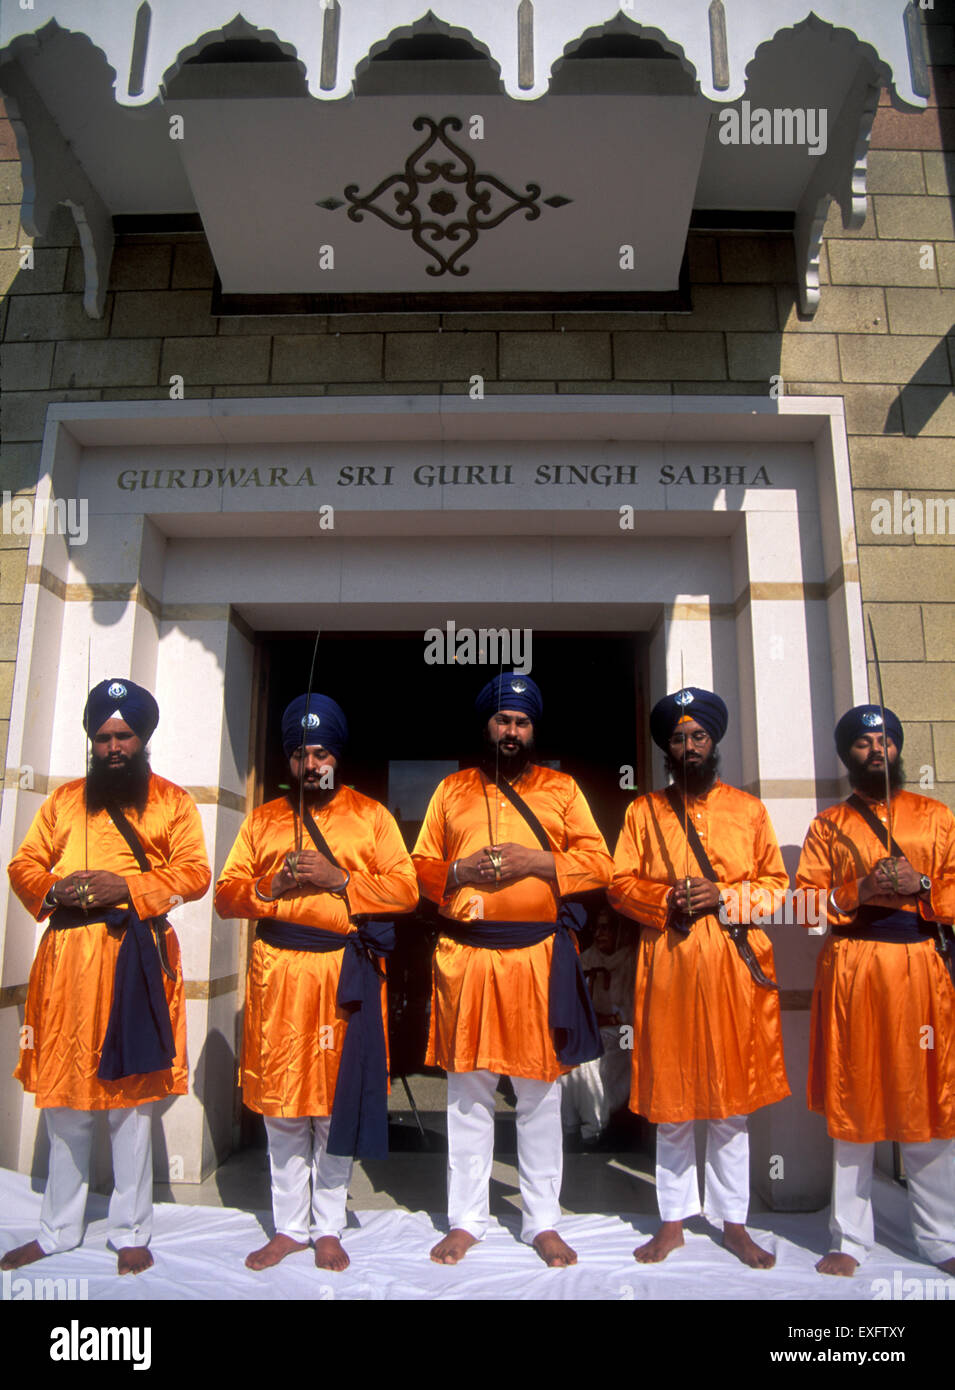 Cinque uomini che rappresentano i cinque santi dalla fondazione del khalsa dal Guru Gobind Singh. Foto Stock